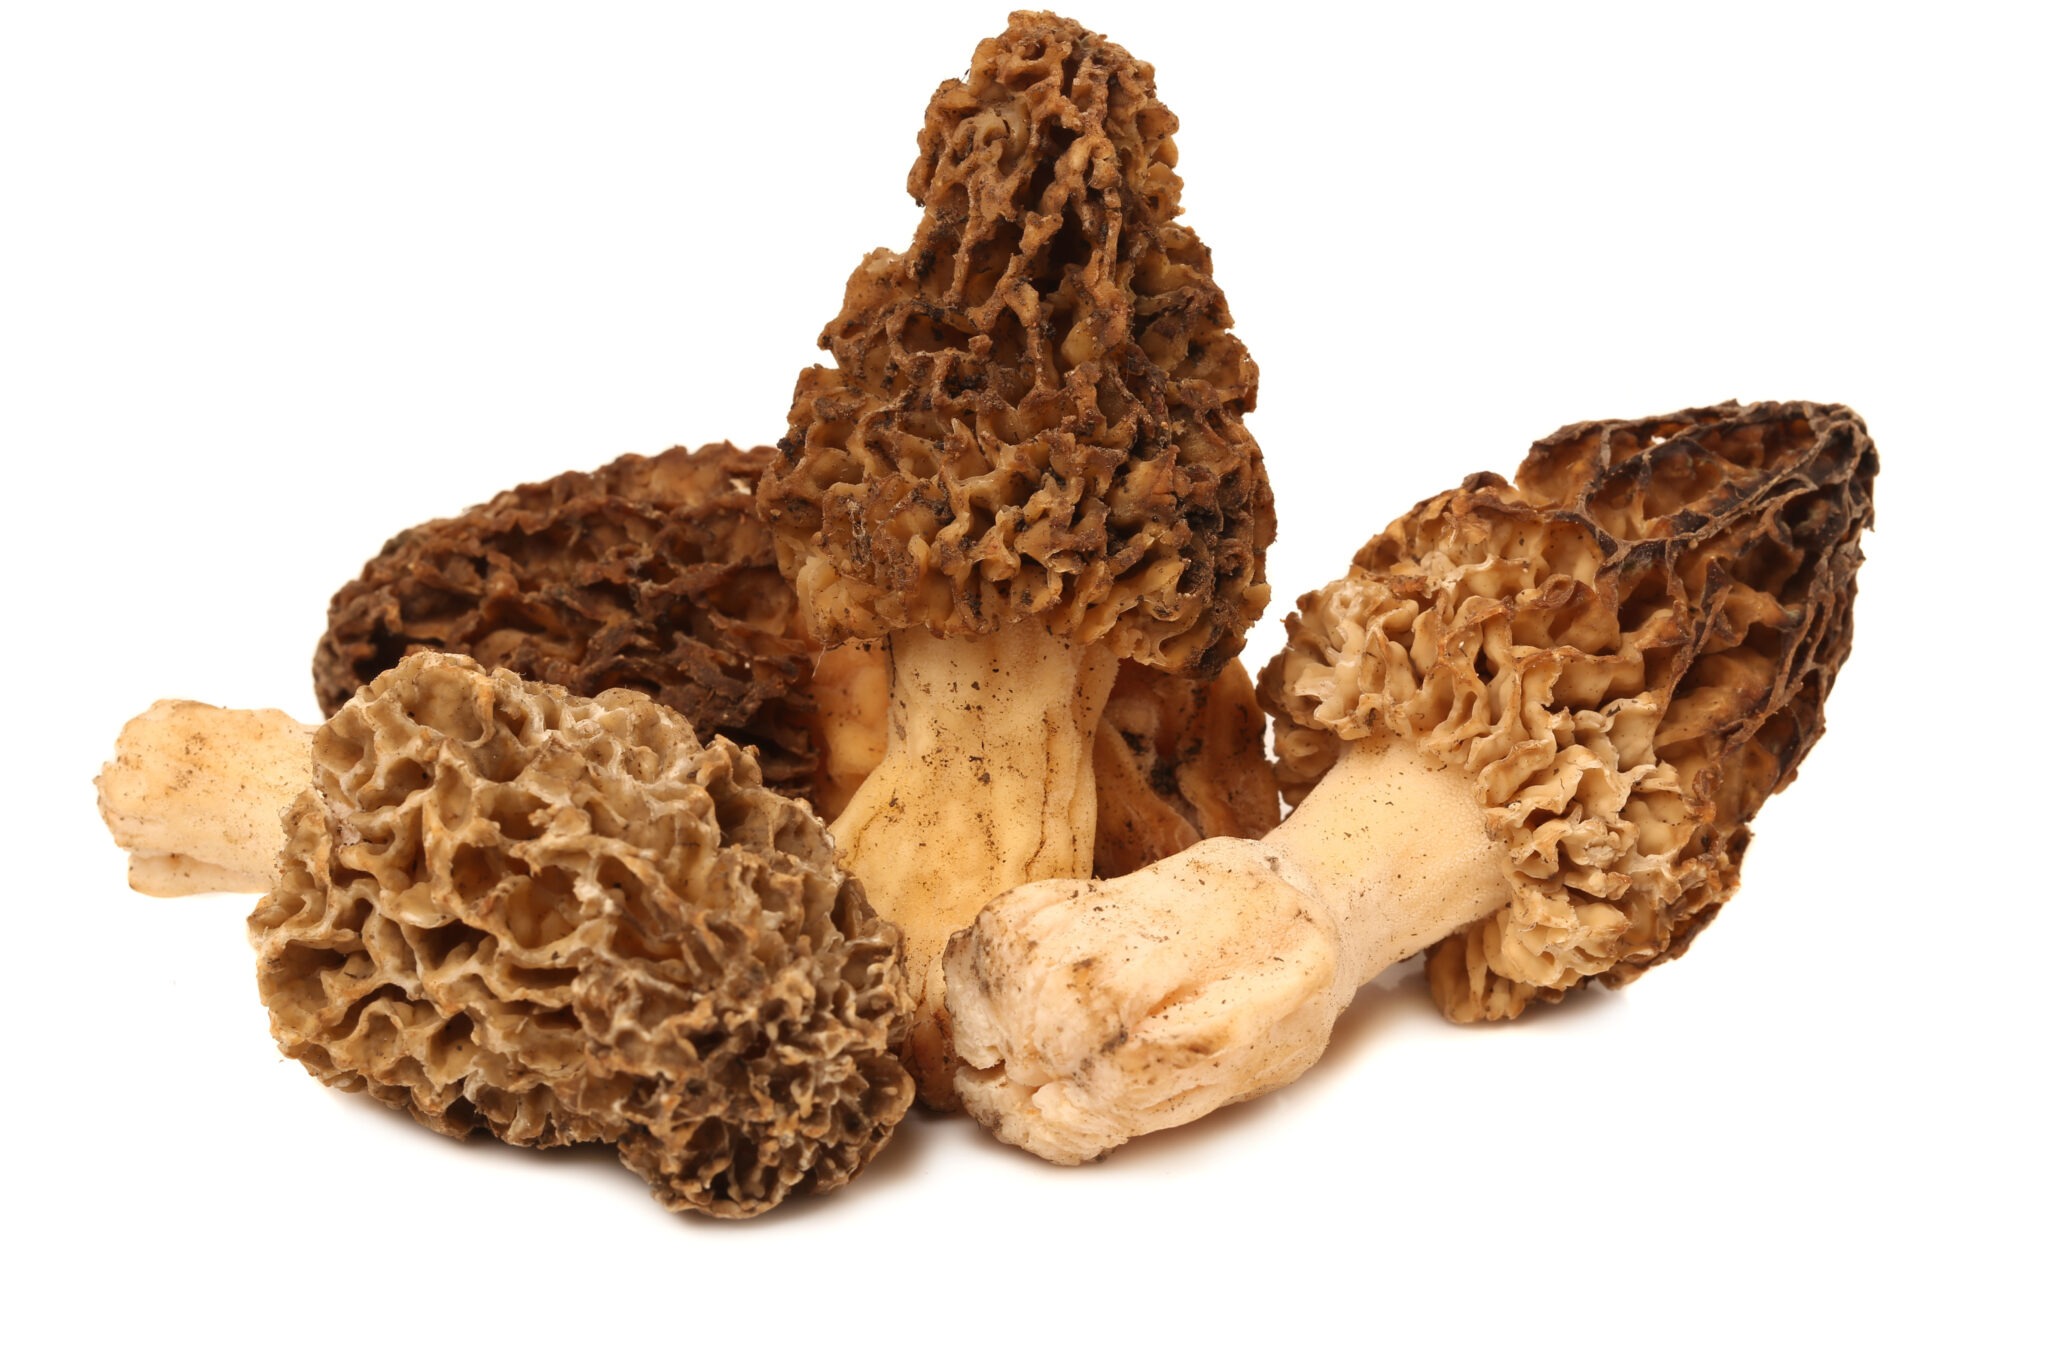 Morel mushroom benefits